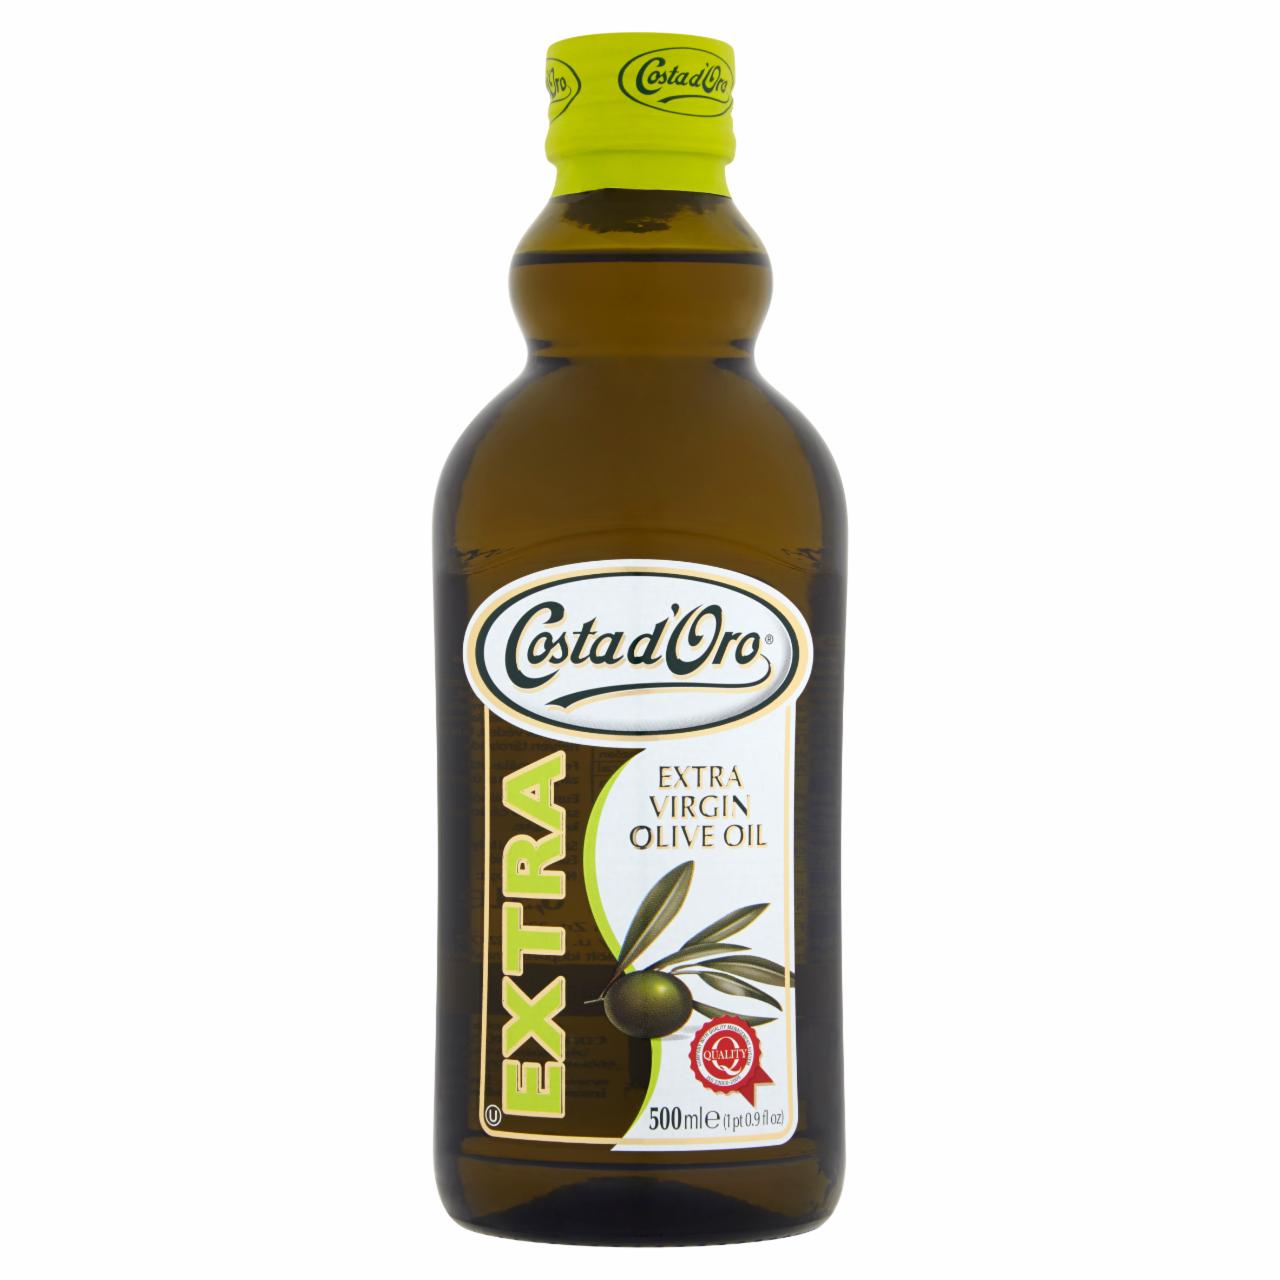 Képek - Costa d'Oro extraszűz olívaolaj 500 ml